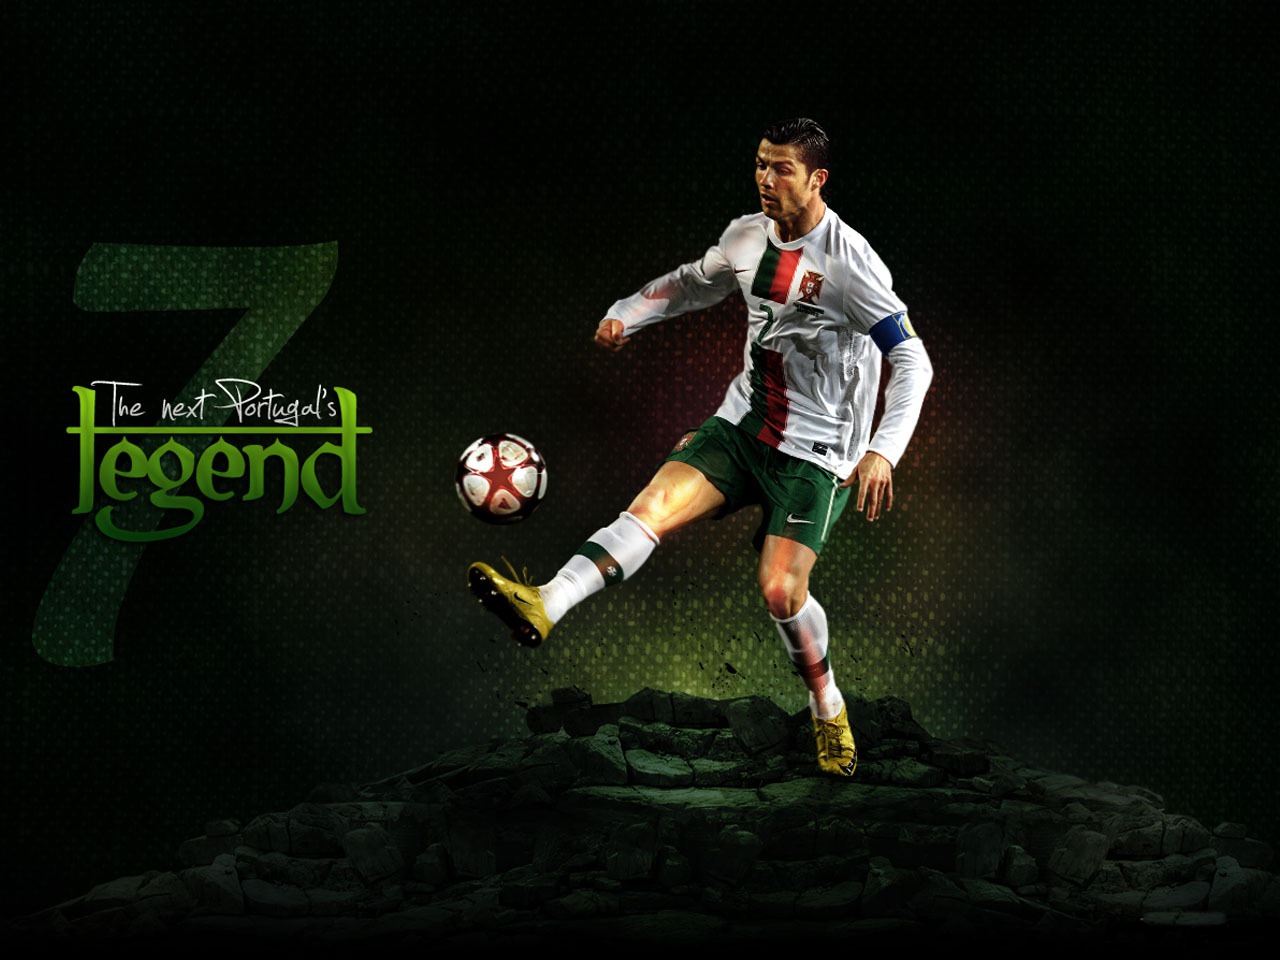 Football Super Star Player Cristiano Ronaldo New HD